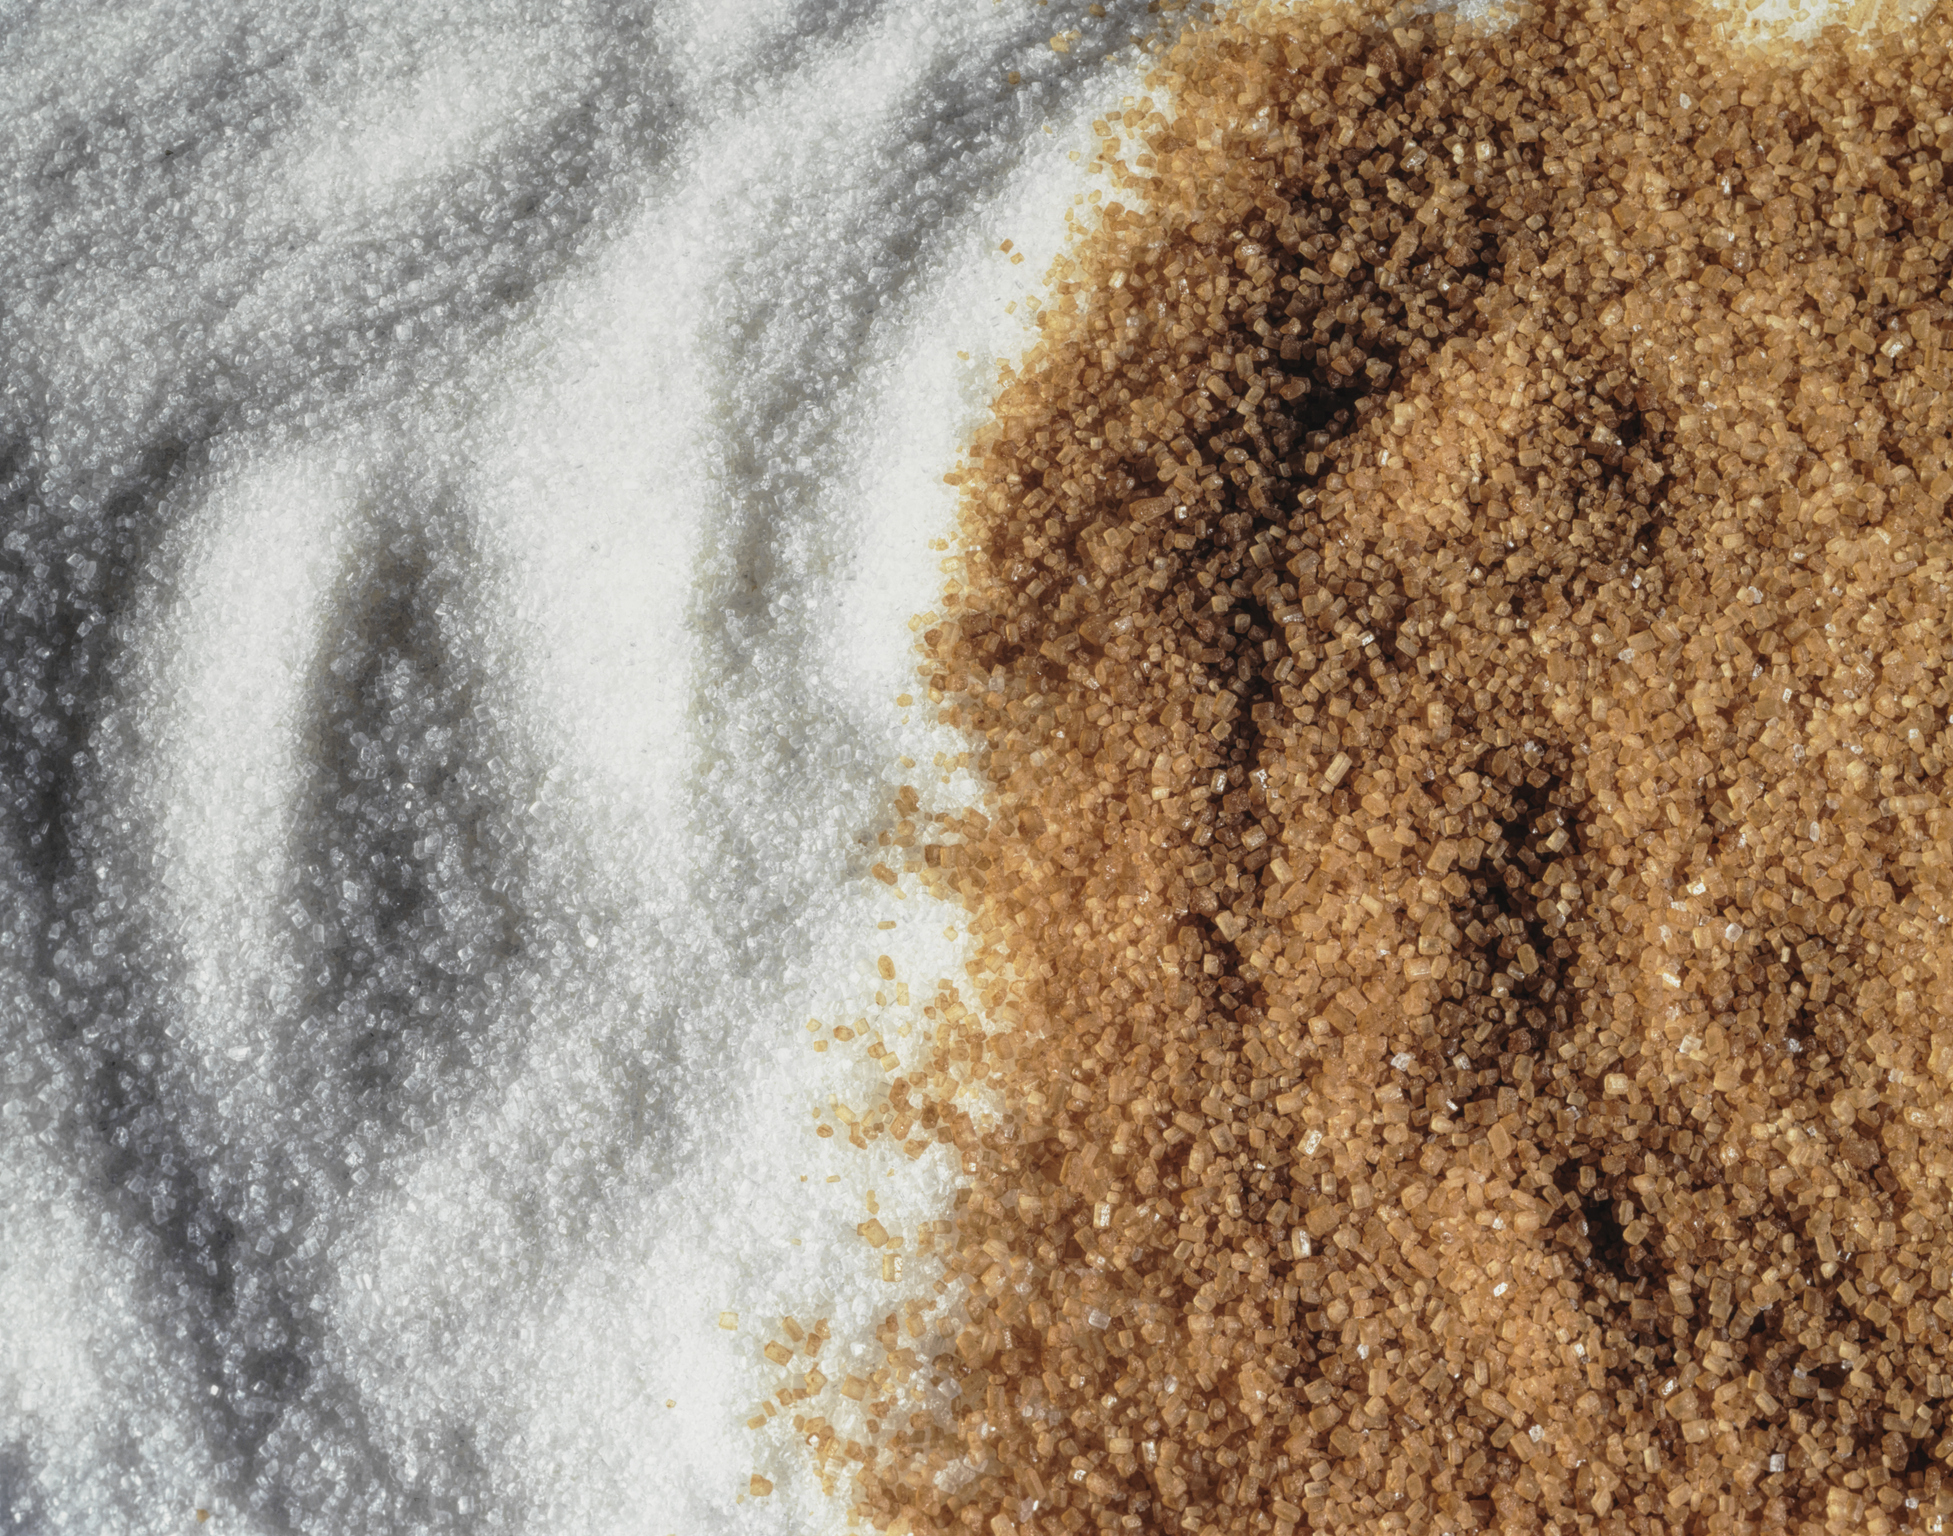 Una dieta con alto contenido de azúcar puede causar mal aliento y podría ser la culpable de la halitosis dada la manera en que los azúcares interactúan con las bacterias que se encuentran en la boca (Getty Images)